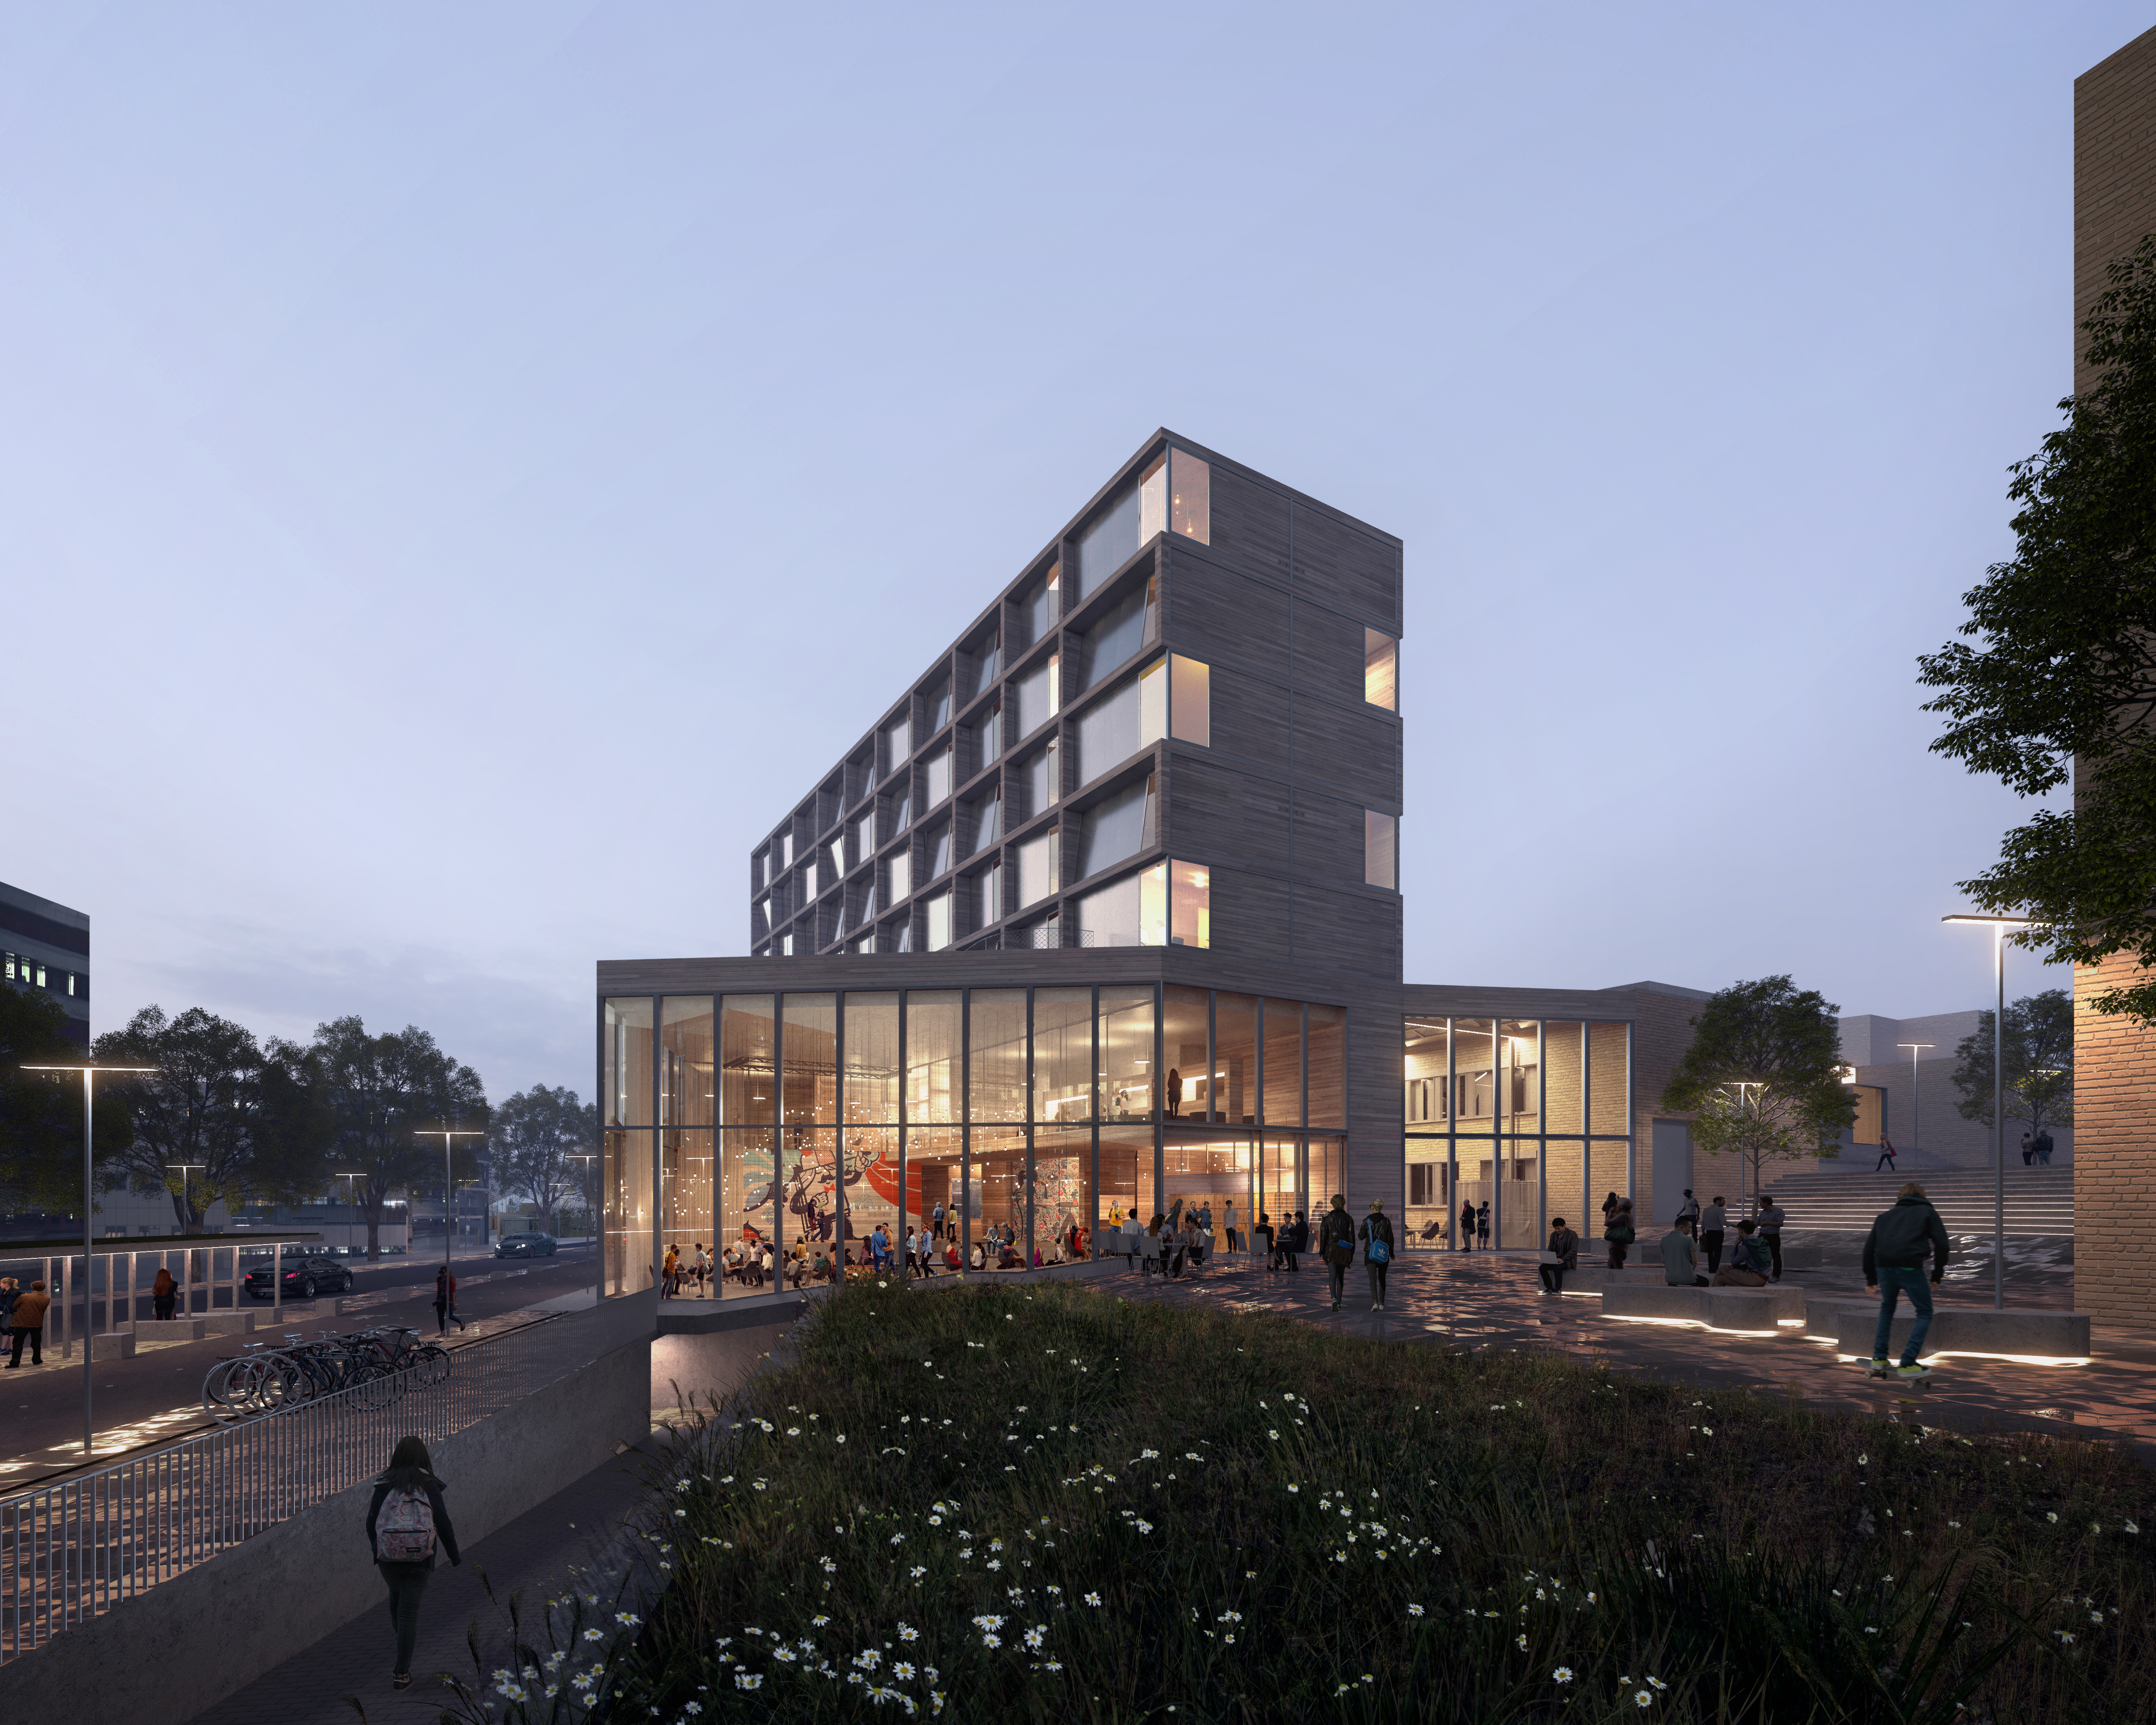 Skisse til nytt studenthus i Ålesund. Illustrasjon: Lusparken Arkitekter og 3RW Arkitekter